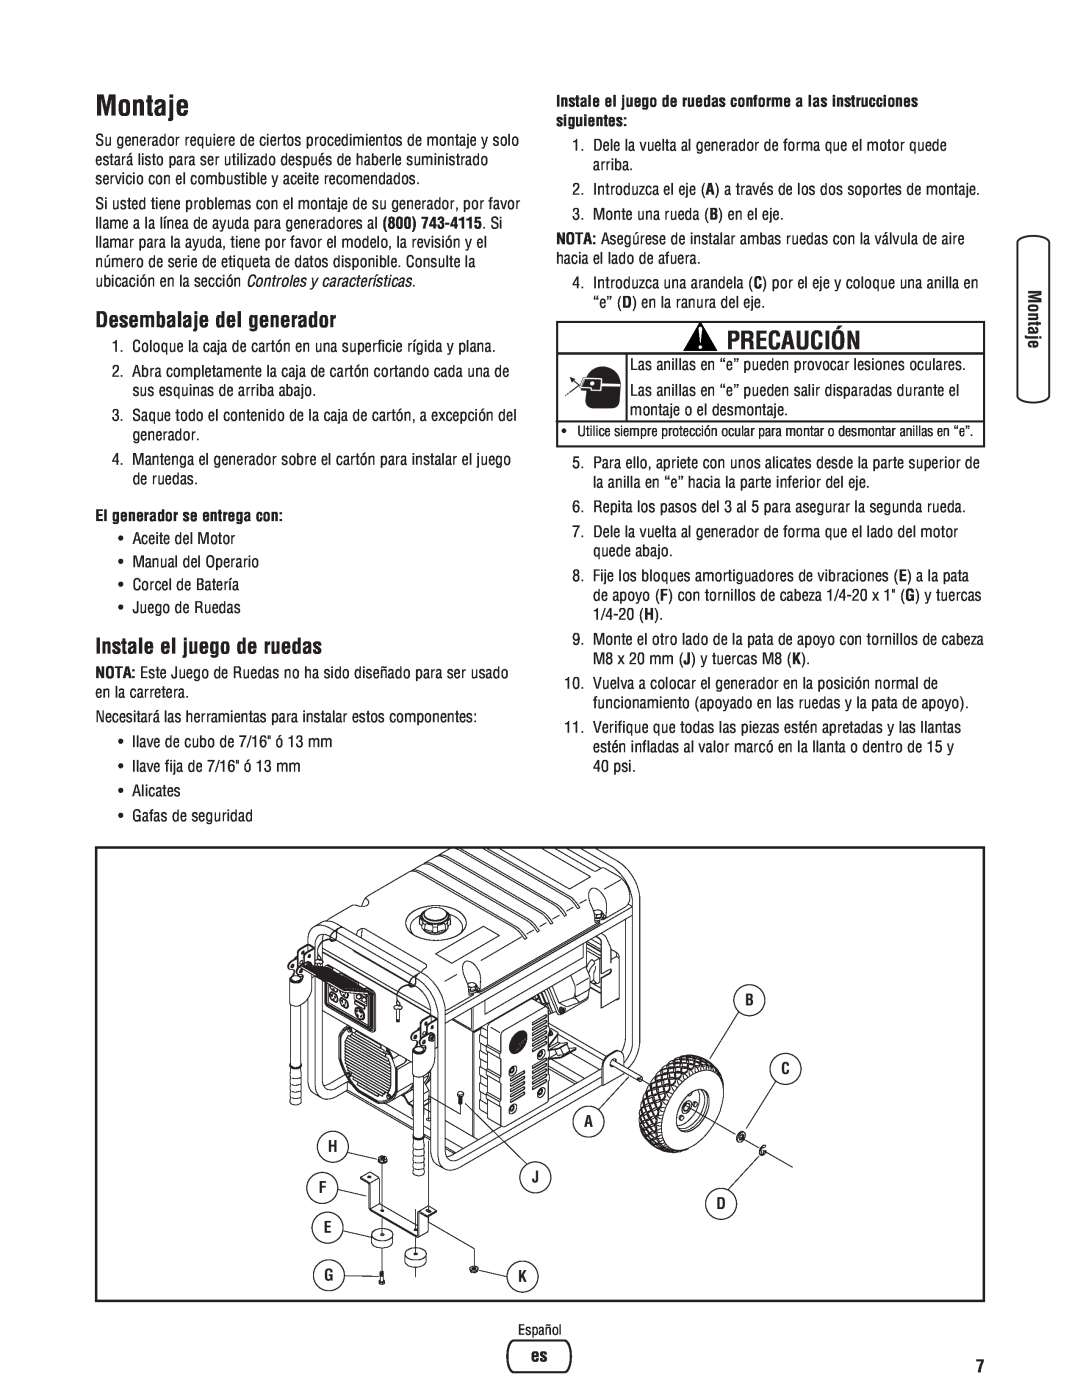 Briggs & Stratton 8000 Watt Portable Generator Montaje, Desembalaje del generador, Instale el juego de ruedas, Precaución 